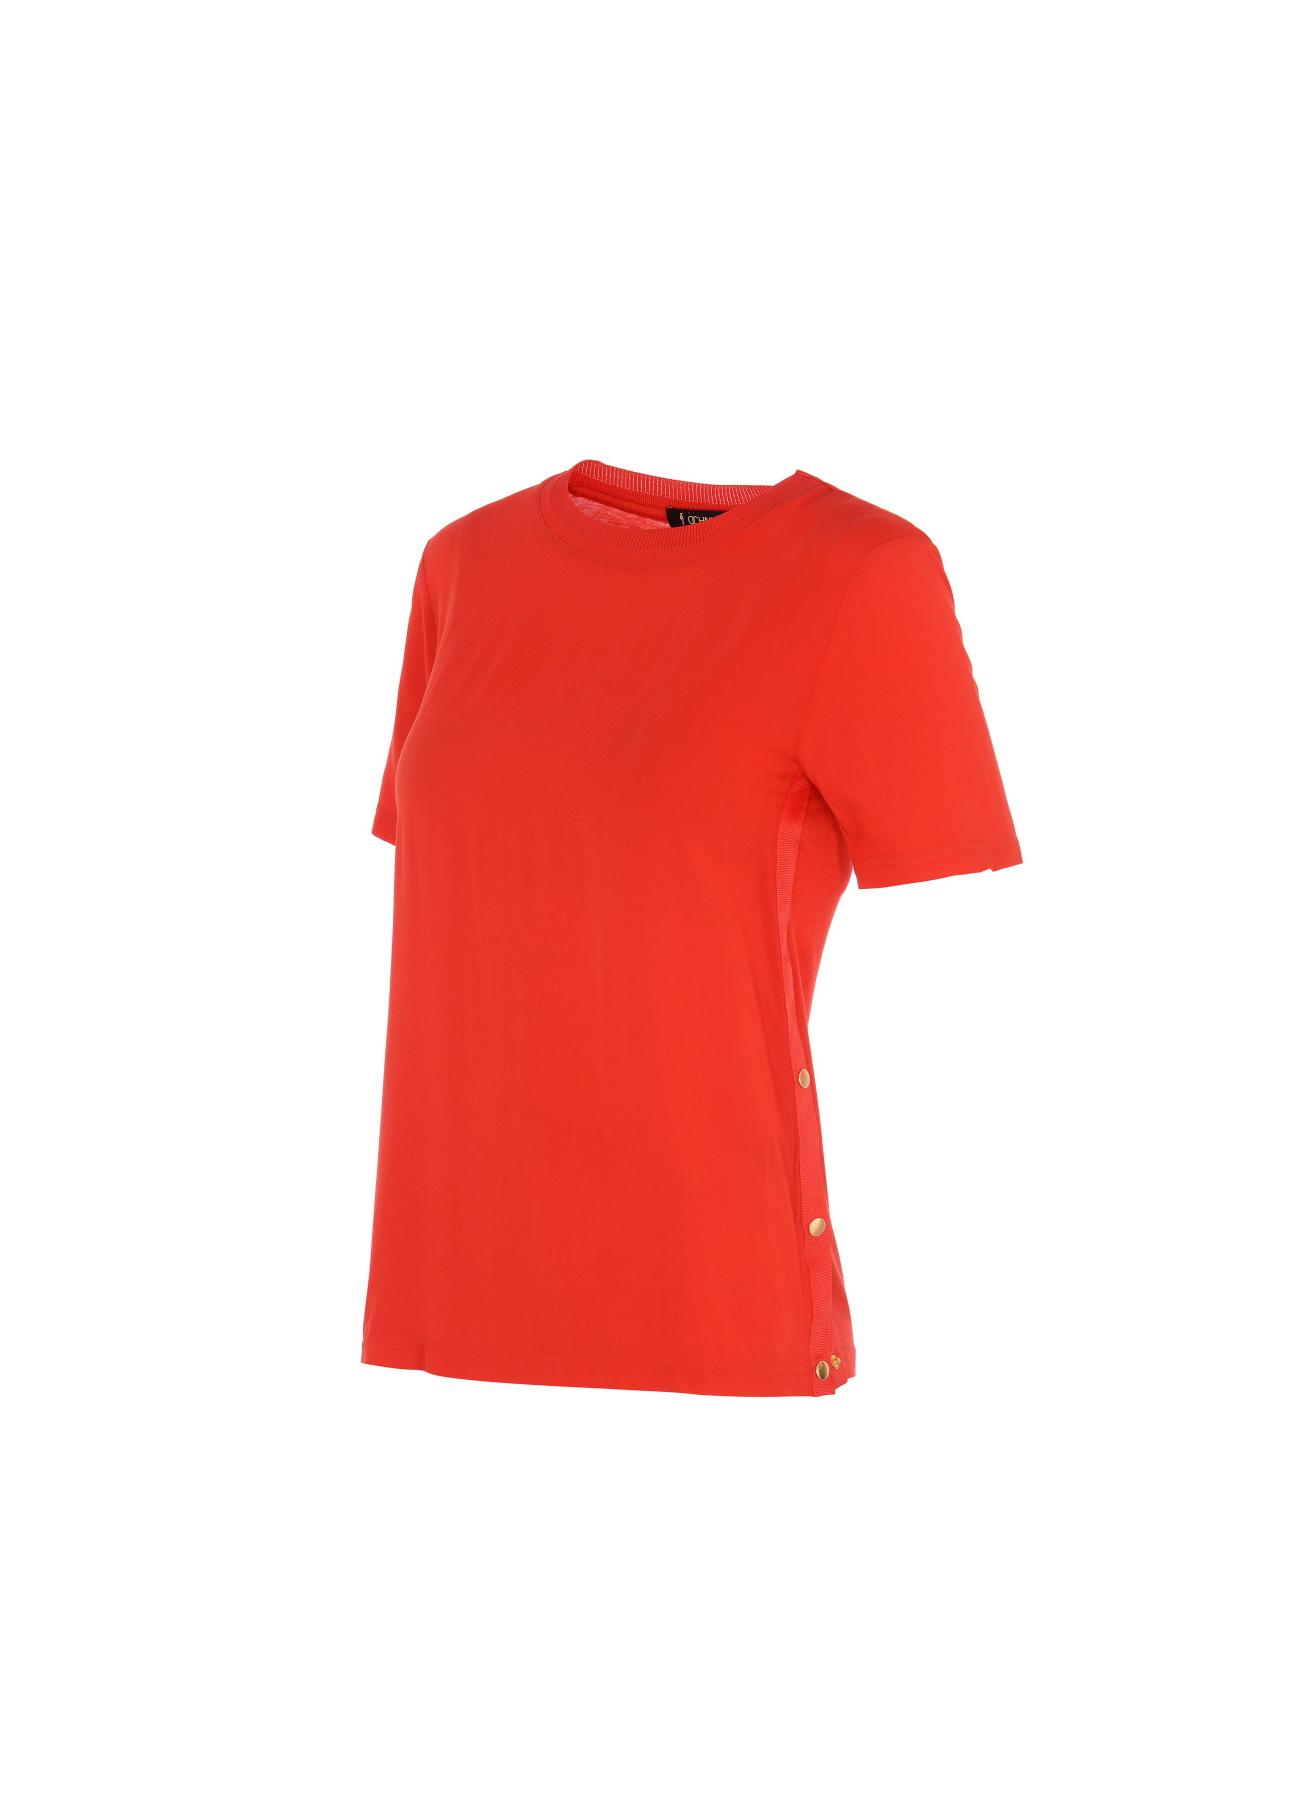 Czerwona bluzka basic damska BLUDT-0076-42(W20)